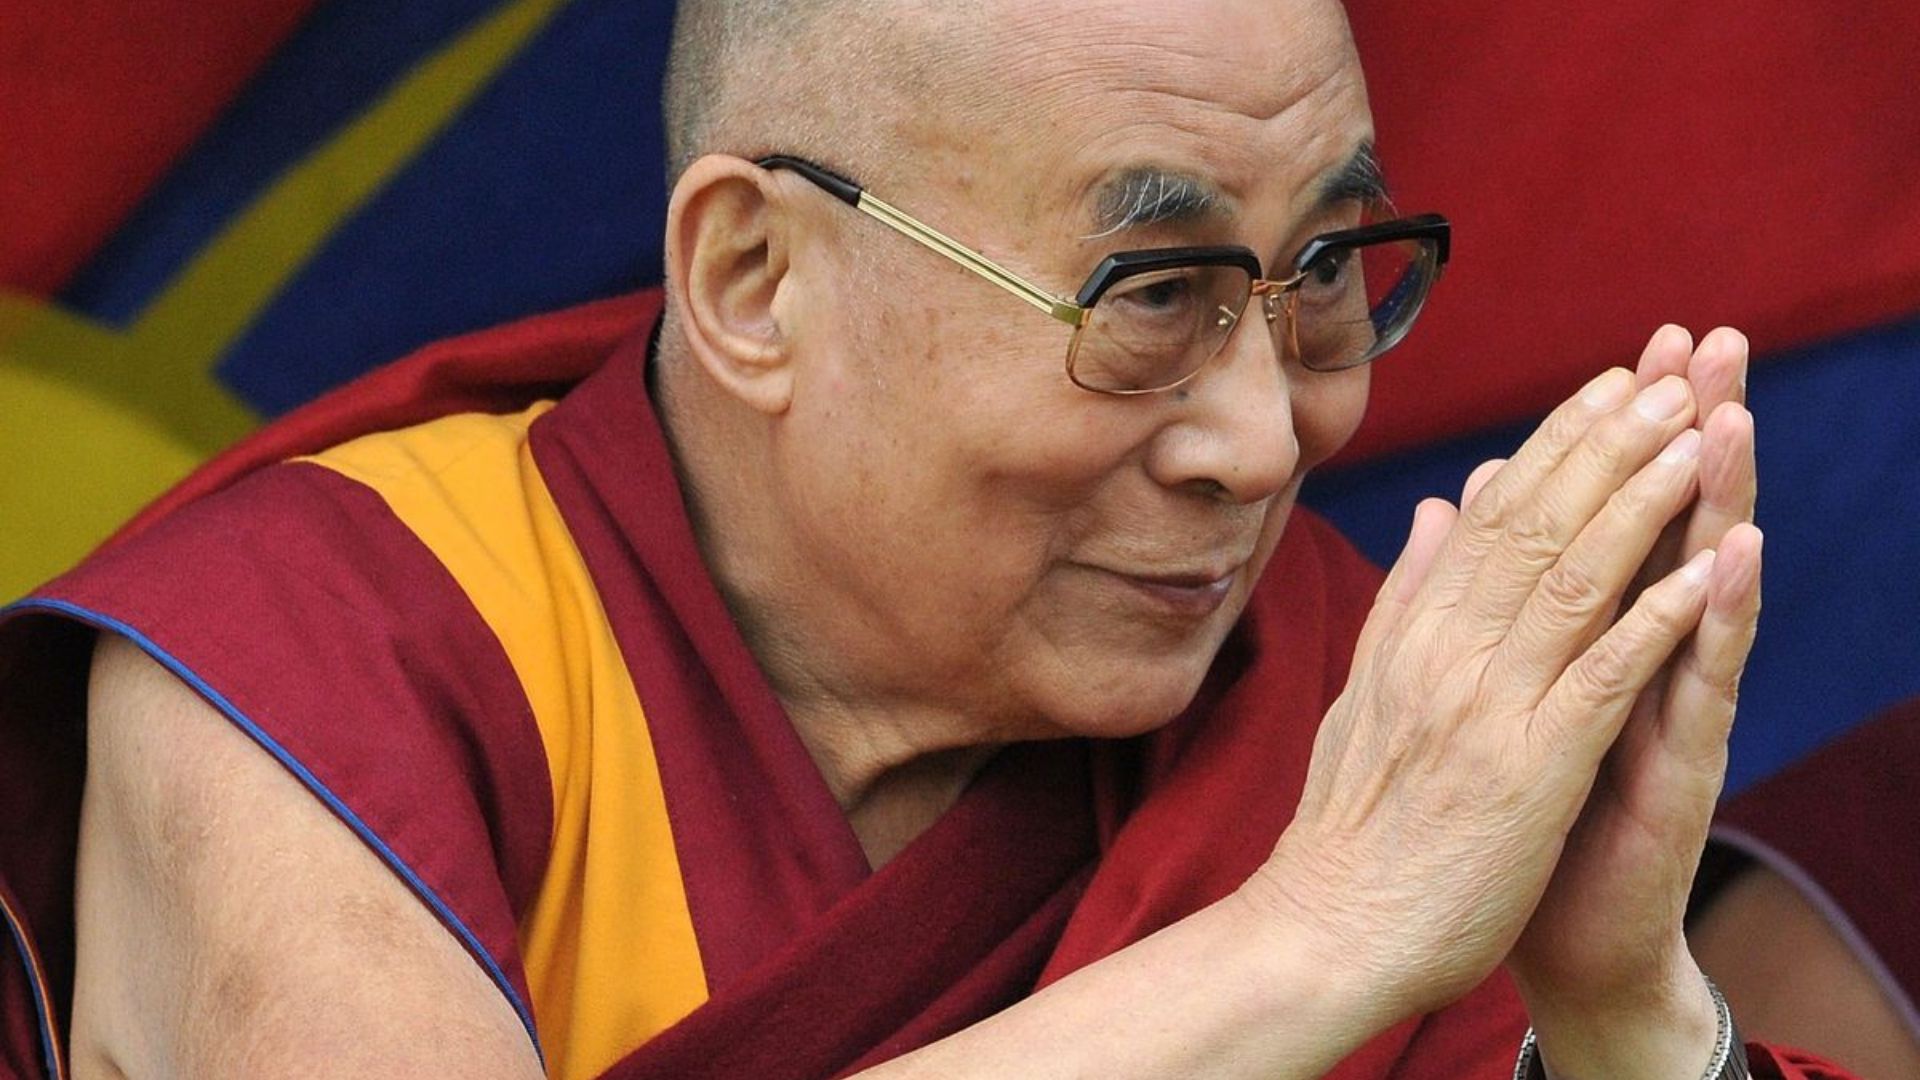 Dalai Lama Doing A Welcoming Gesture